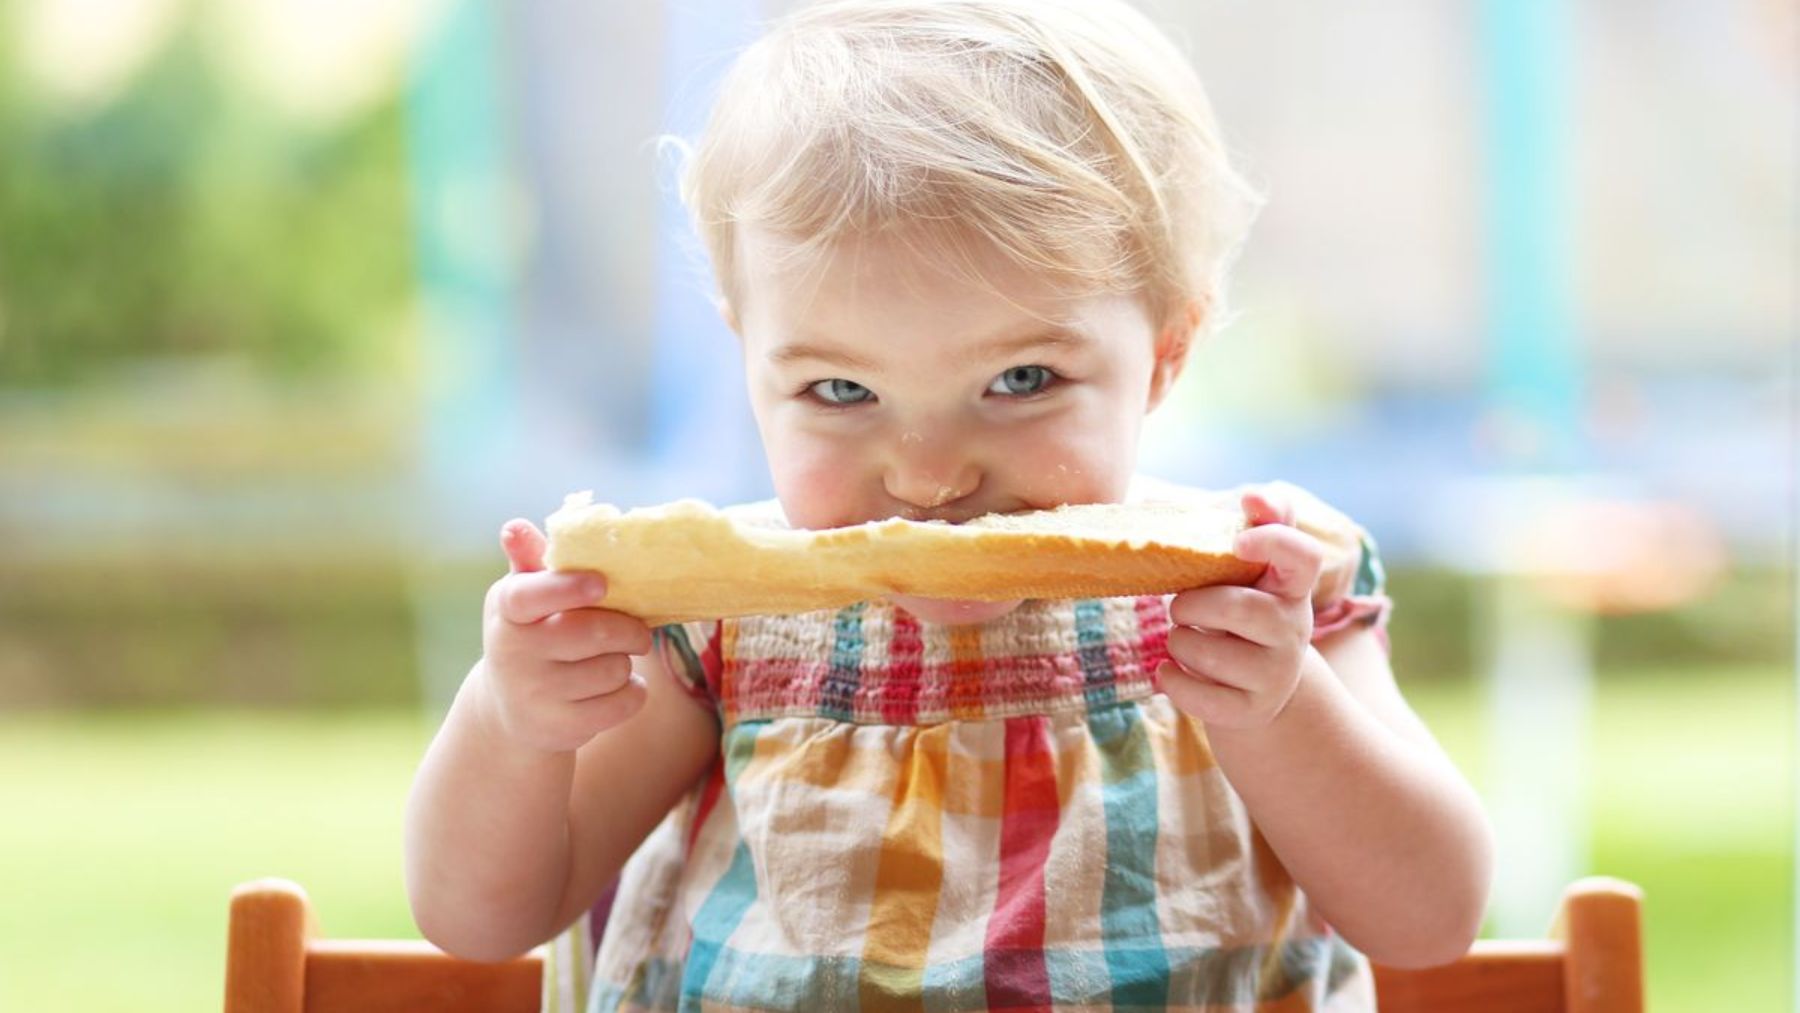 Сливочное масло девочка. Ребенок ест хлеб с маслом. Бутерброды для детей. Ест бутерброд. Девочка ест бутерброд с маслом.